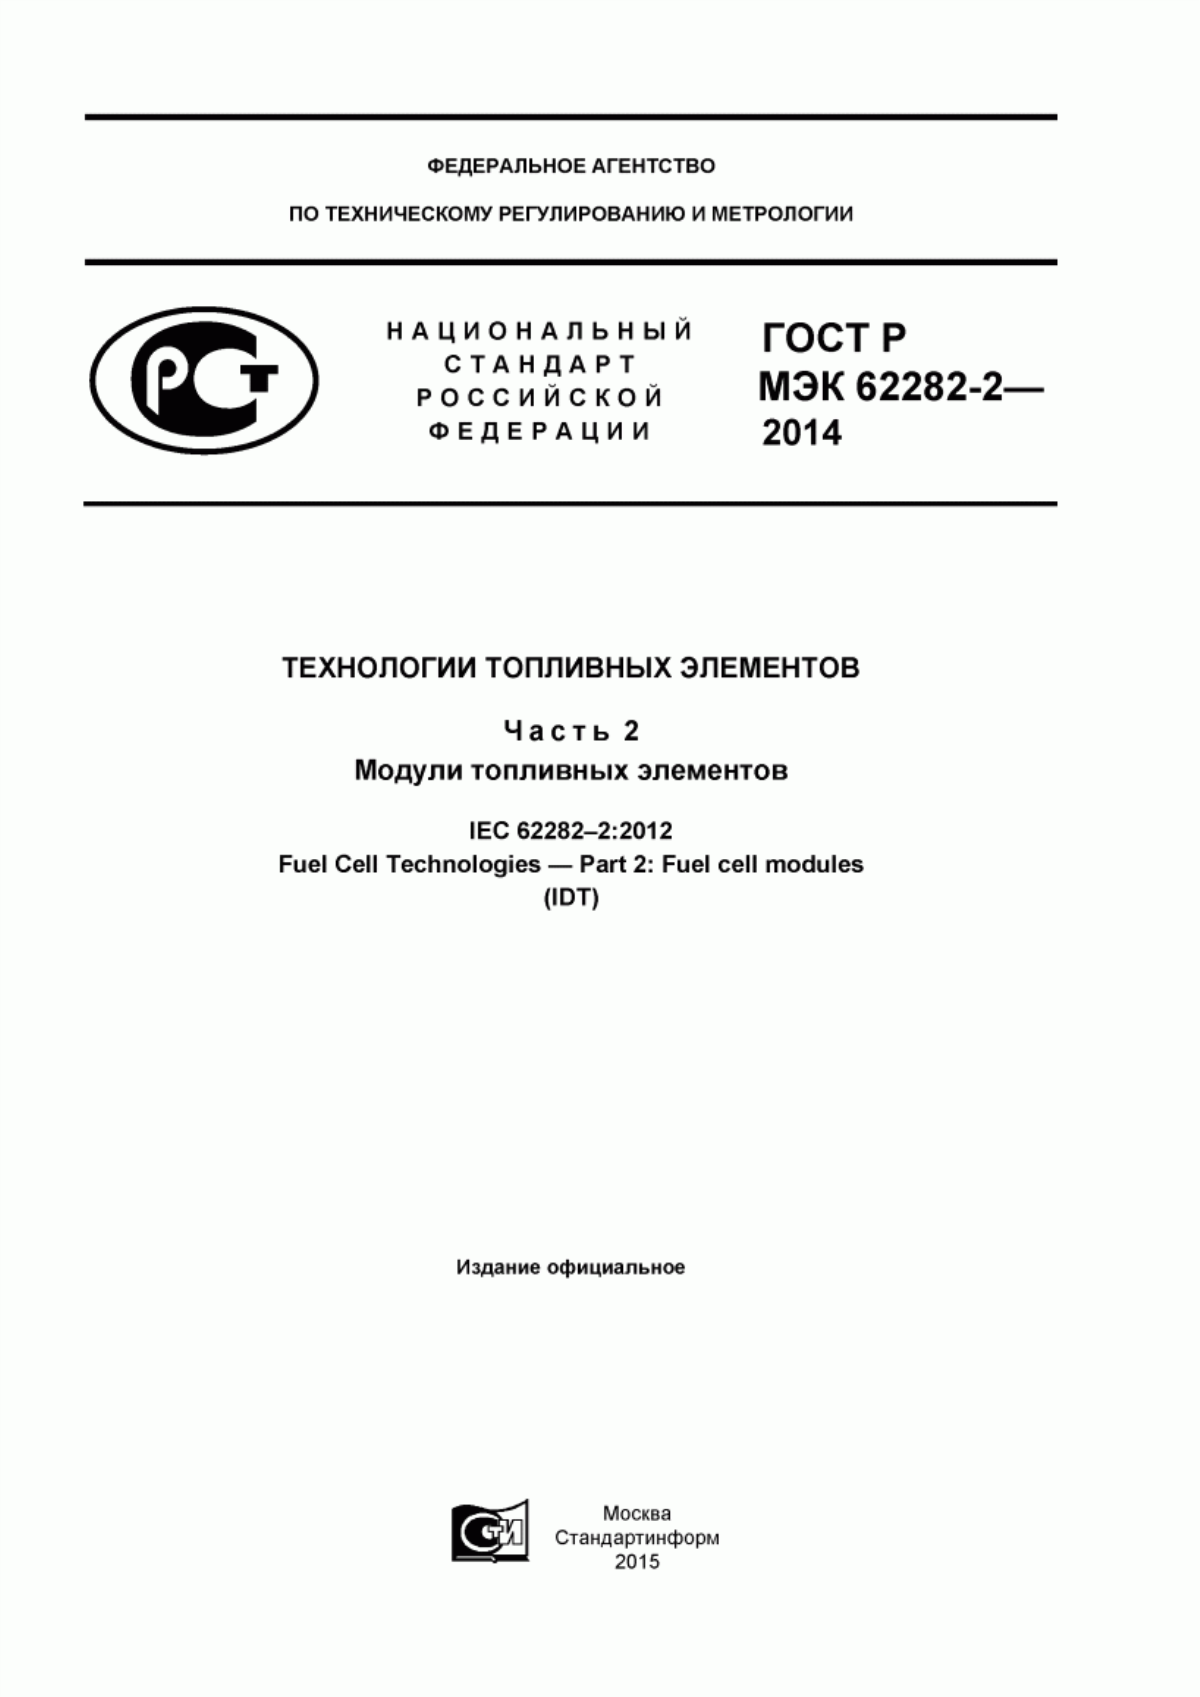 ГОСТ Р МЭК 62282-2-2014 Технологии топливных элементов. Часть 2. Модули топливных элементов